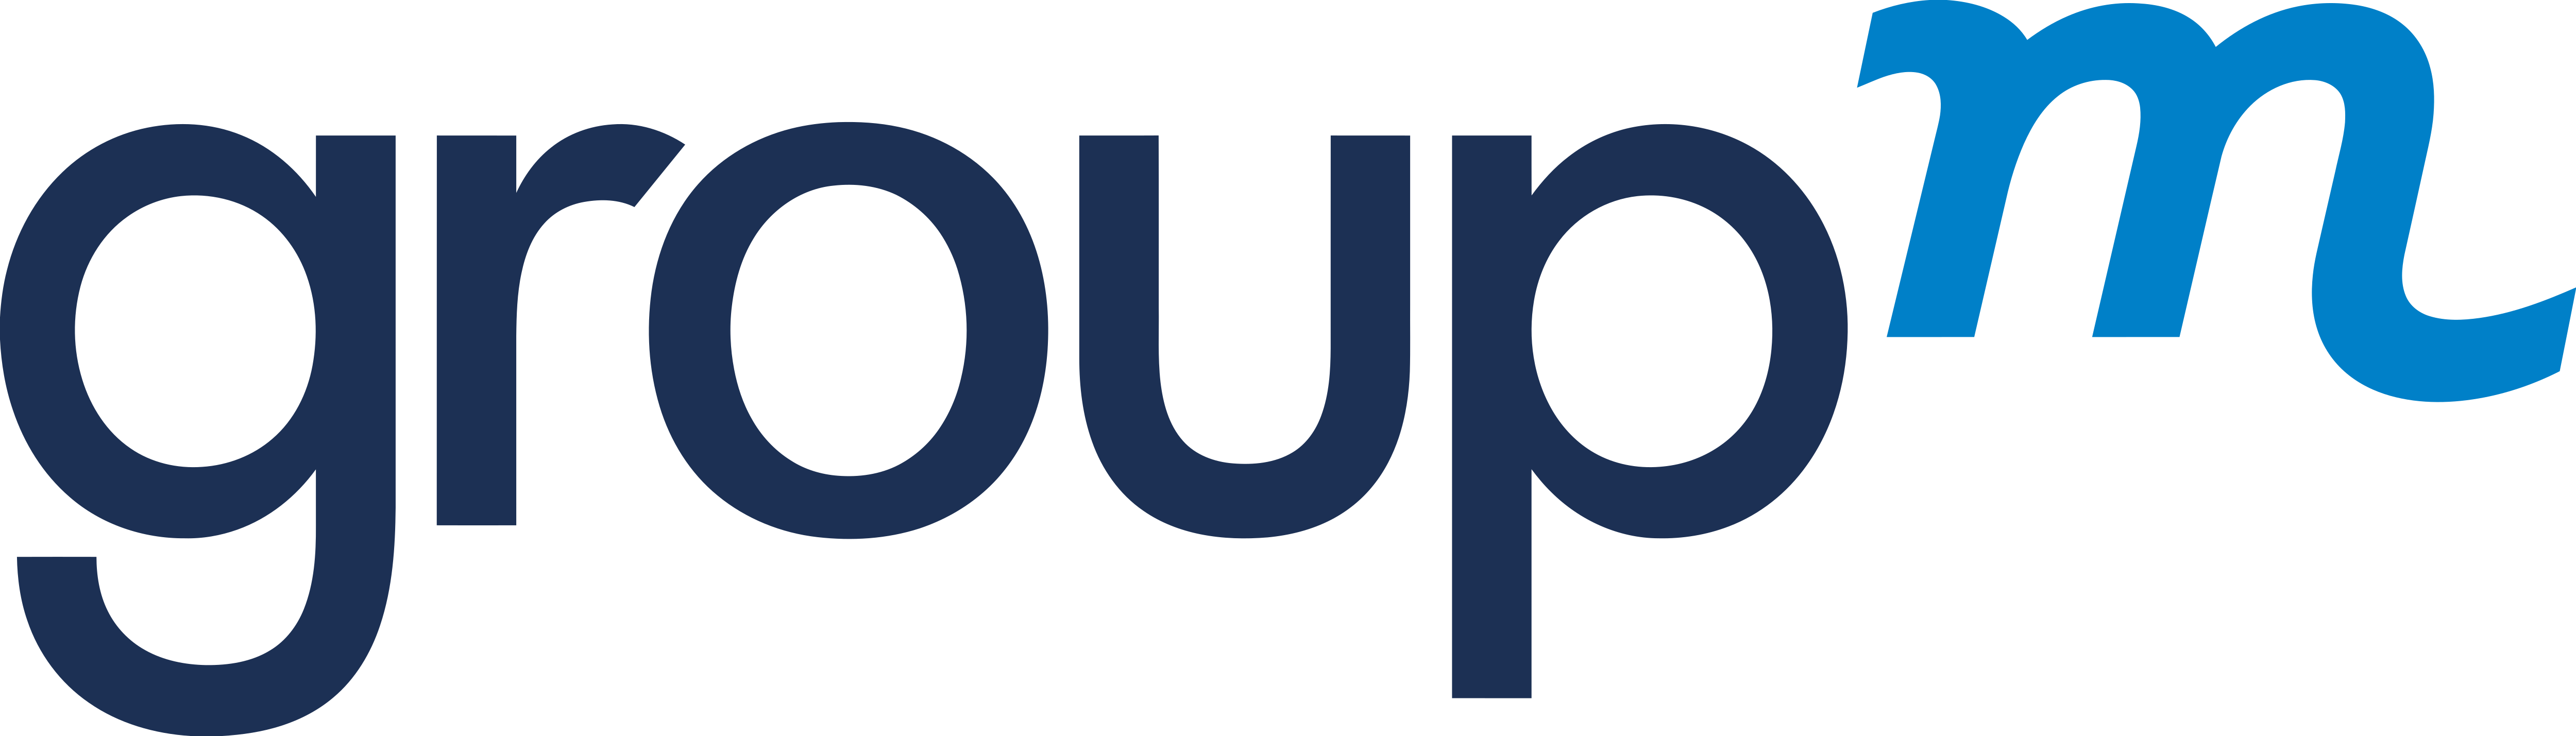 GroupM – Logos Download